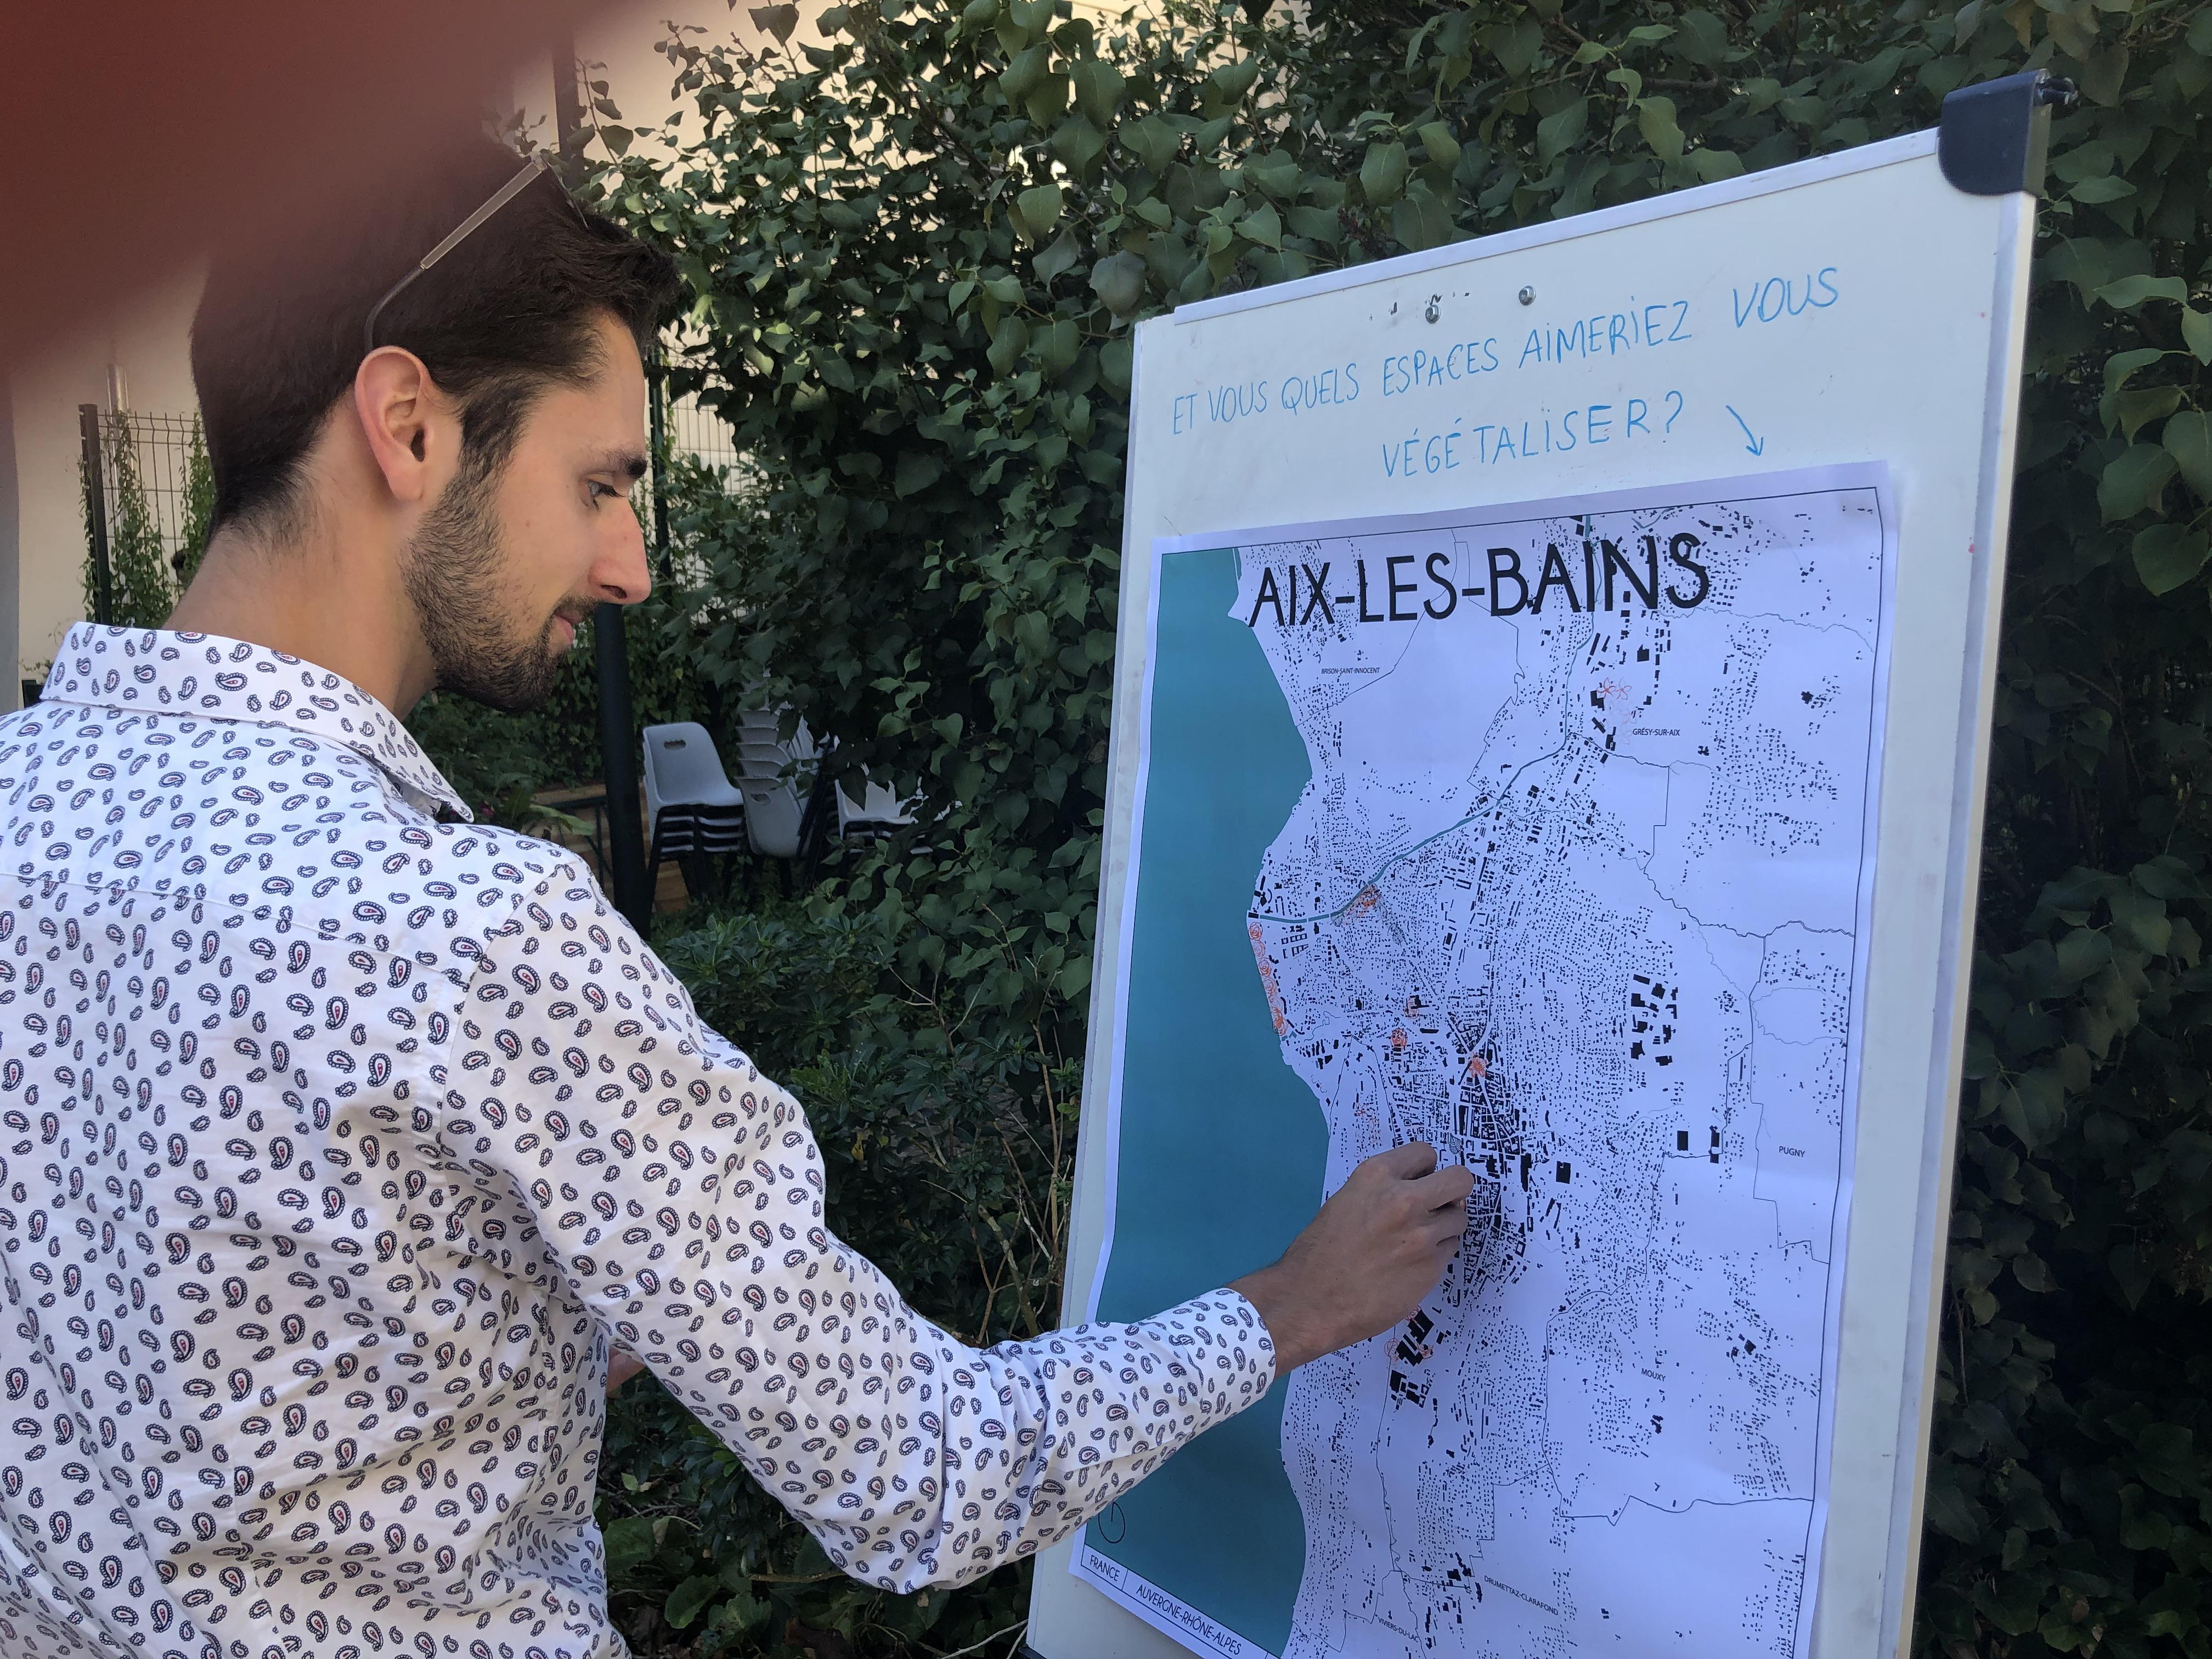 Les visiteurs ont été invités à tamponner sur une carte d’Aix-les-Bains, les coins de la cité thermale qu’ils souhaiteraient verdir.